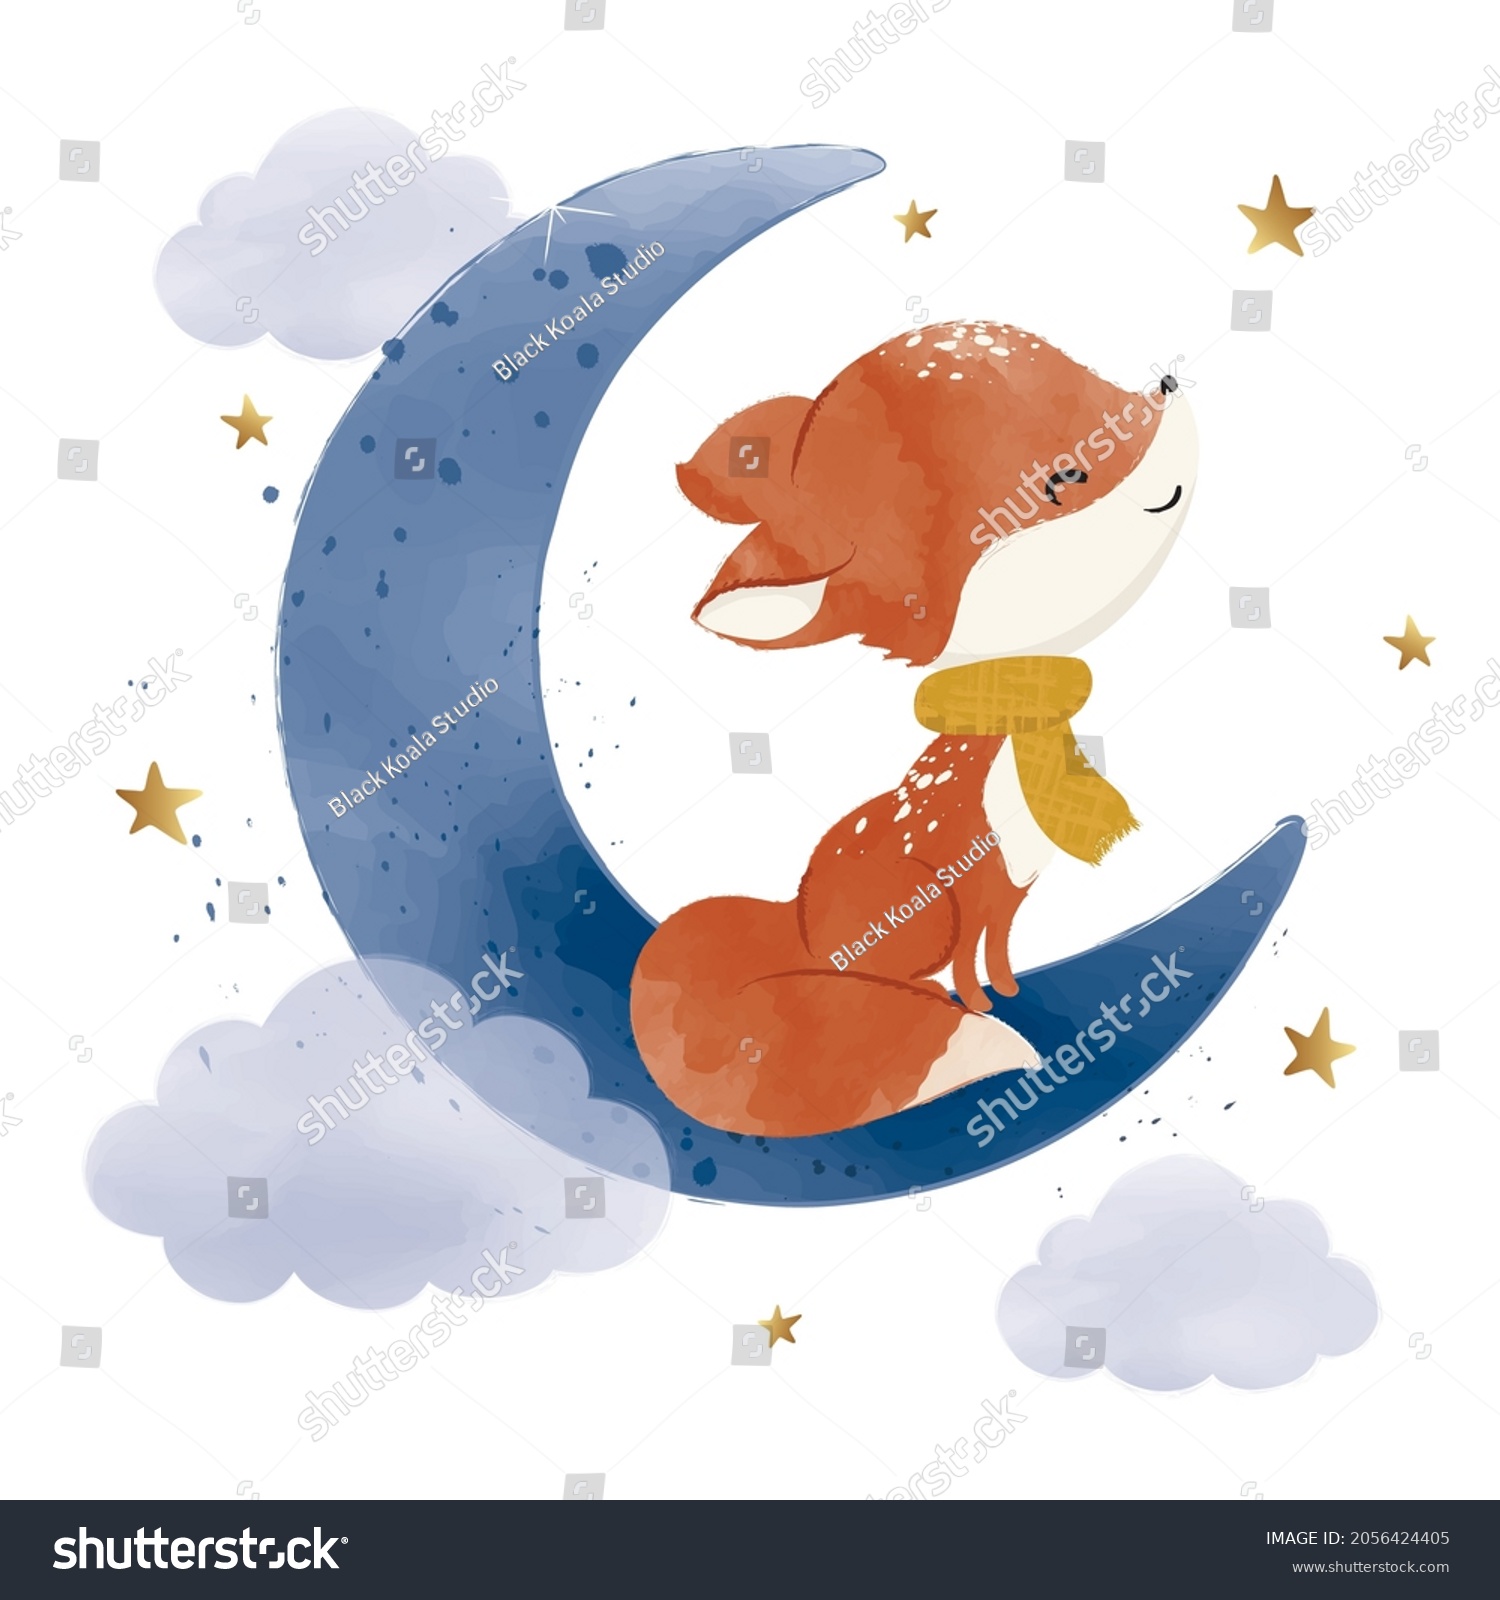 4,260 Moon fox Images, Stock Photos & Vectors | Shutterstock